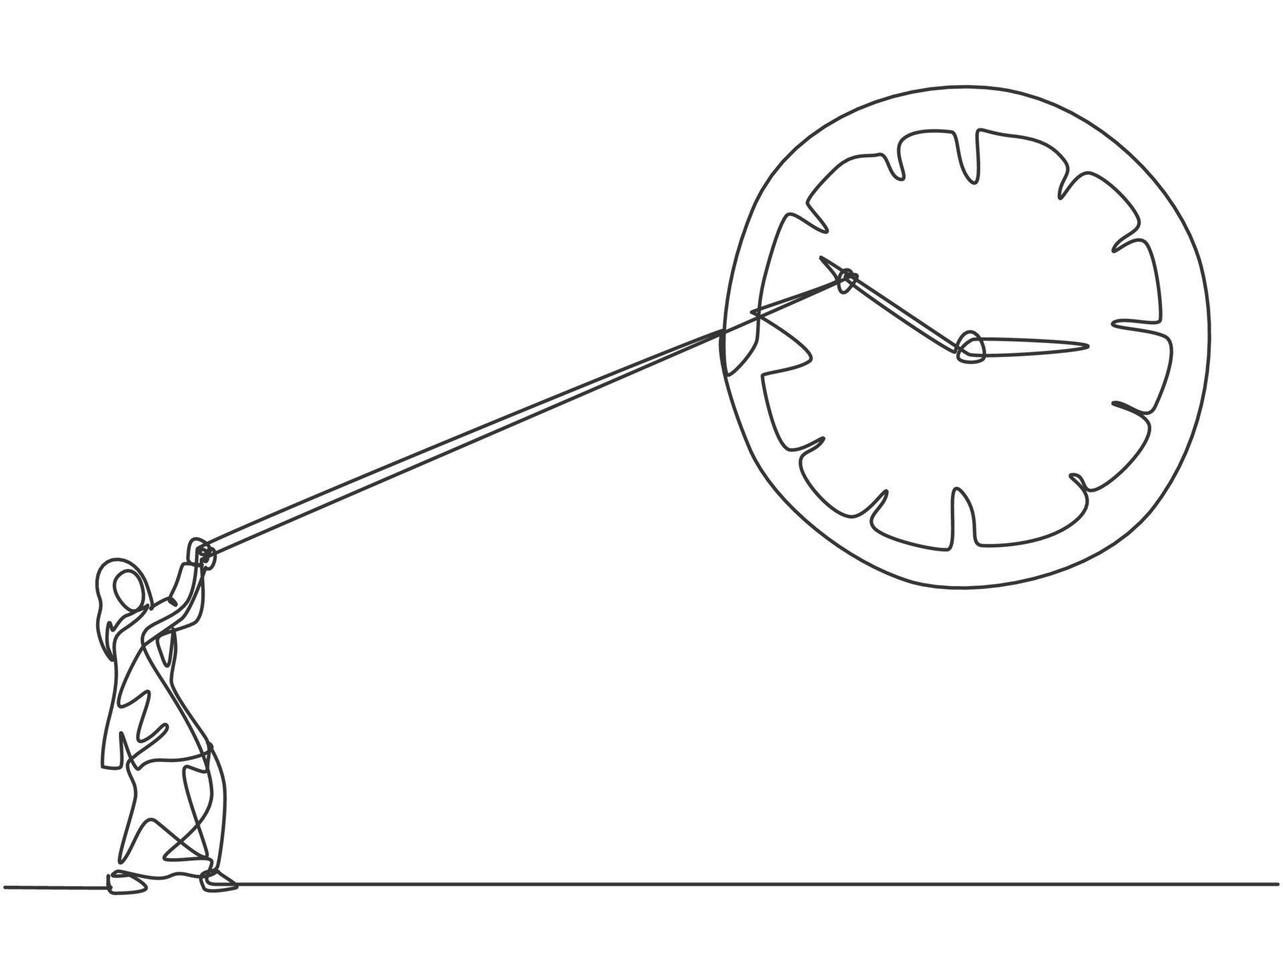 Dibujo de línea continua única joven mujer de negocios árabe tirando en el sentido de las agujas del reloj del gran reloj de pared analógico con cuerda. concepto minimalista de gestión del tiempo. Ilustración de vector de diseño gráfico de dibujo de una línea.